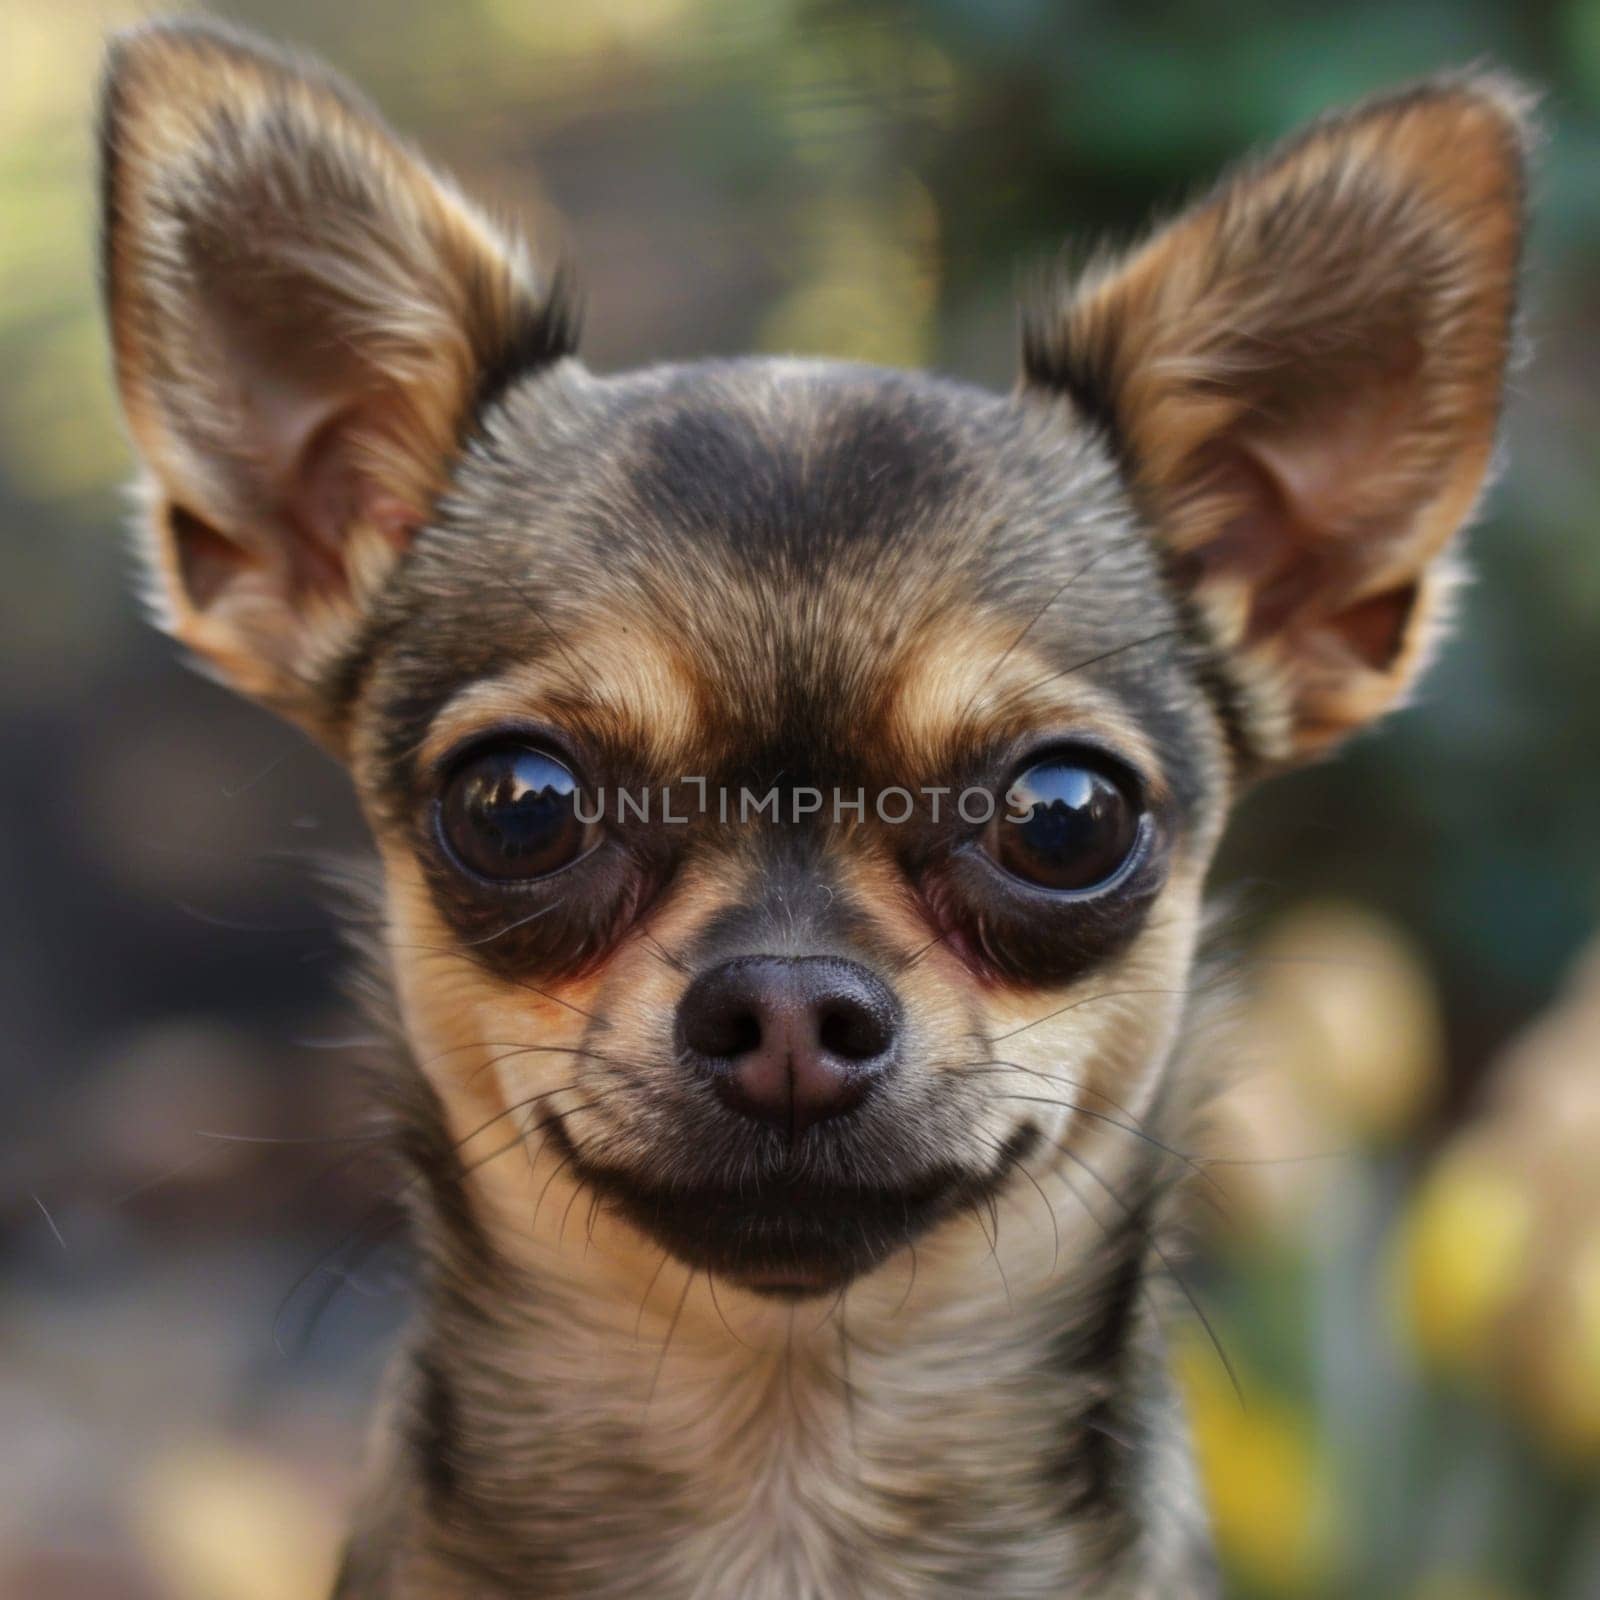 Headshot of a chihuahua dog looking at camera.